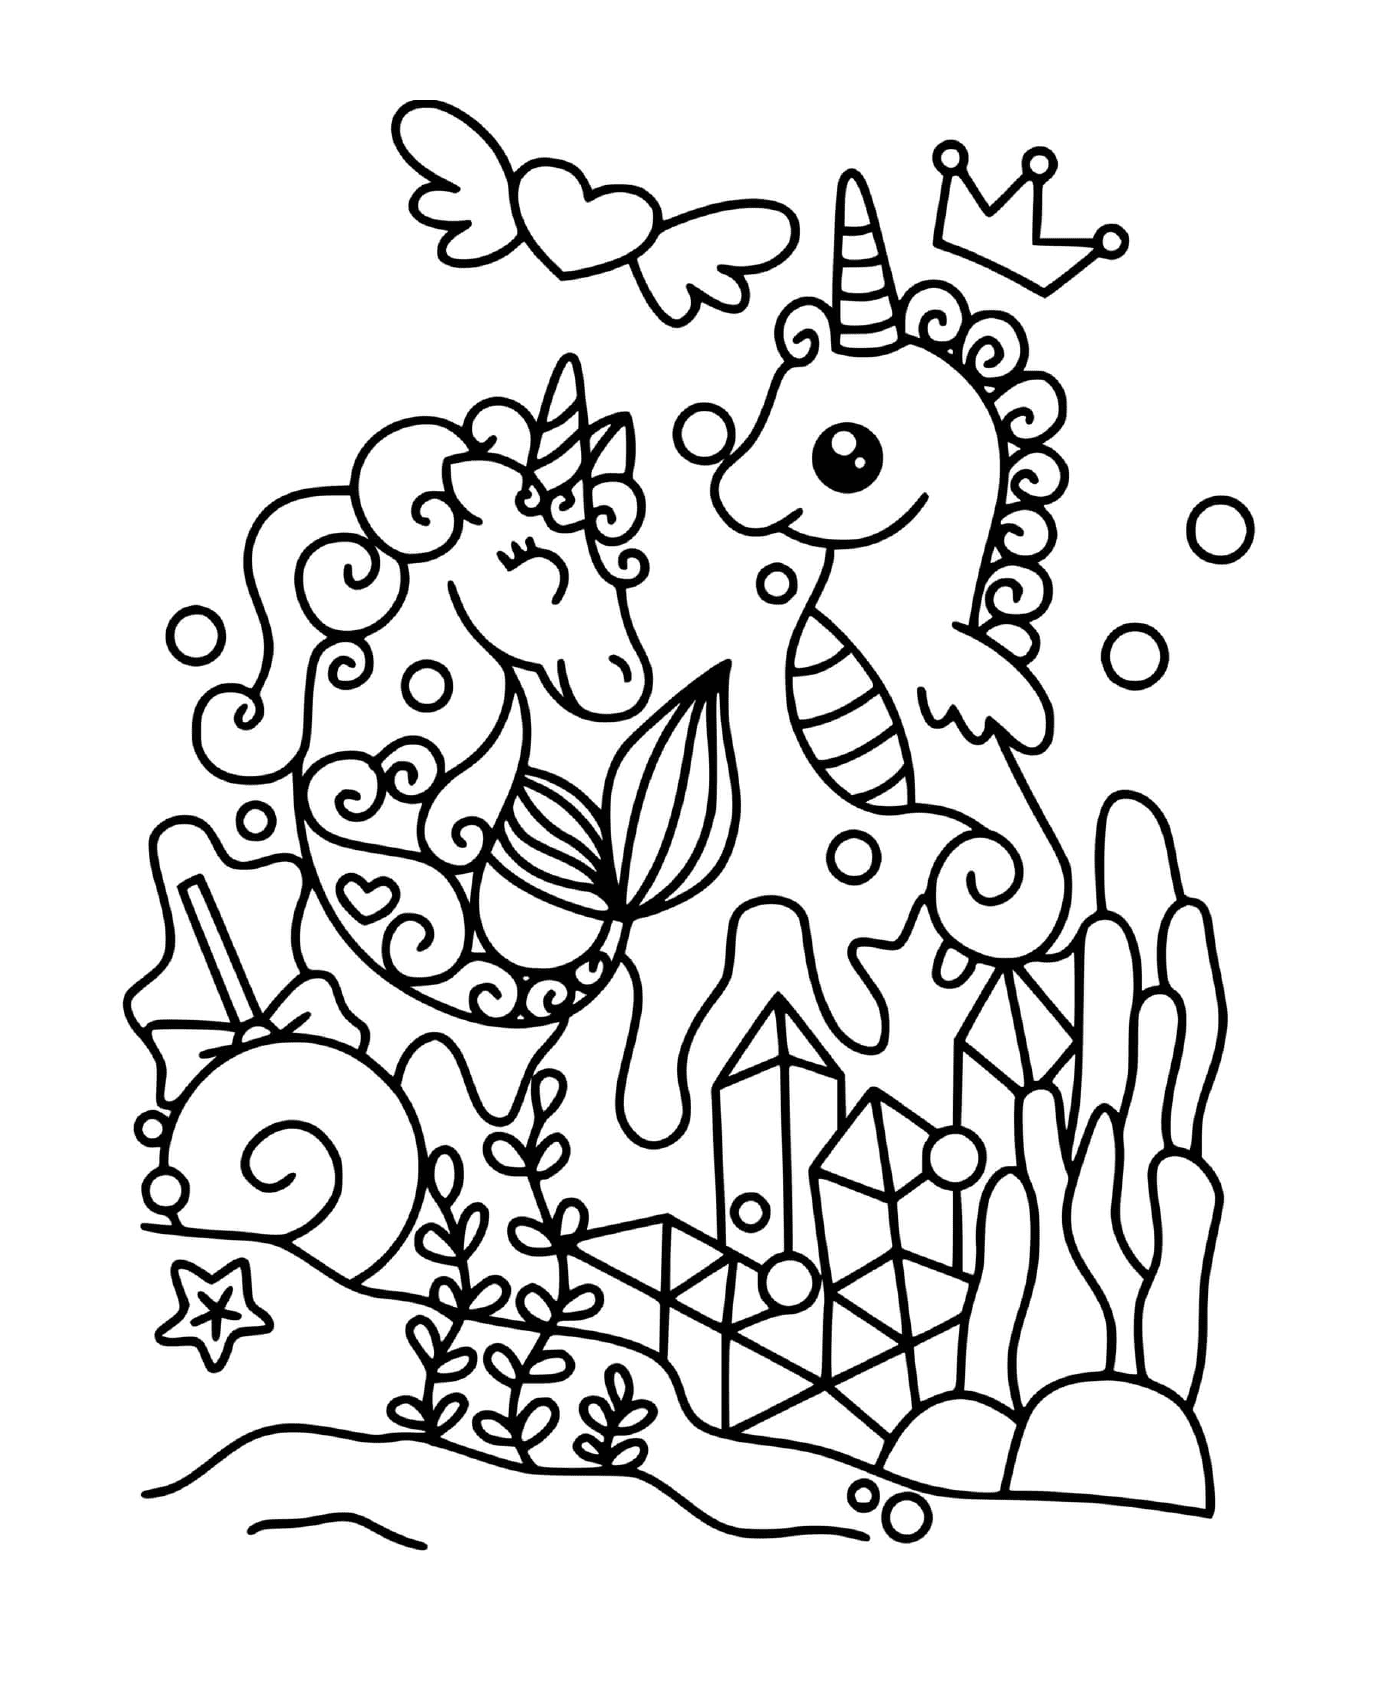  Unicorno e magico cavalluccio marino 